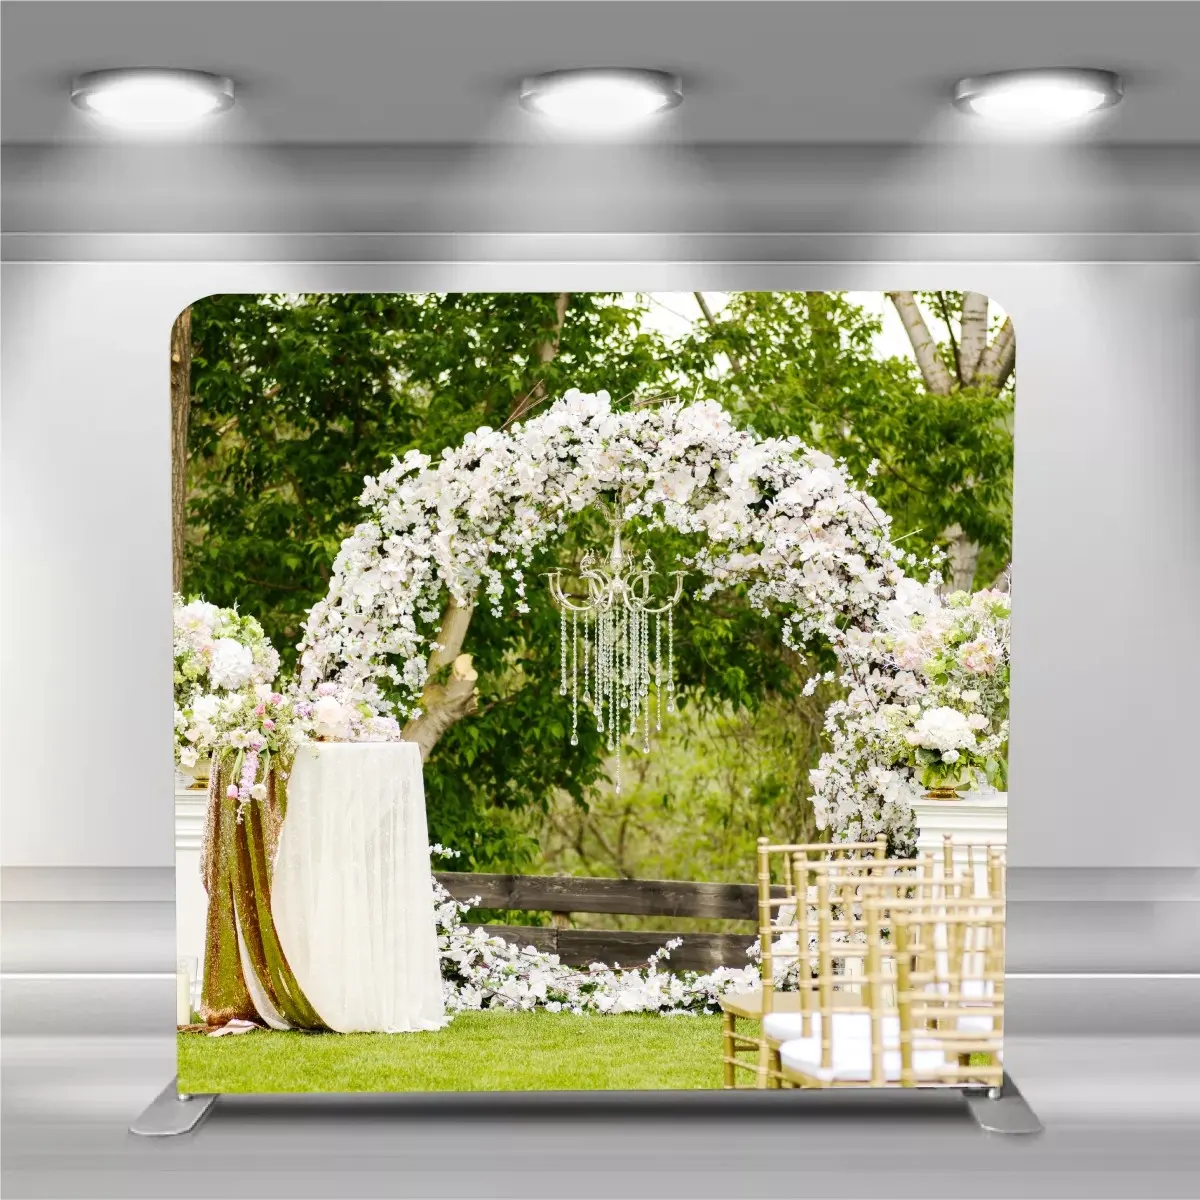 Suporte de fundo de parede dobrável, 8 pés de alumínio em forma de reta, para fundo de fotos, suporte de backdrop para casamento